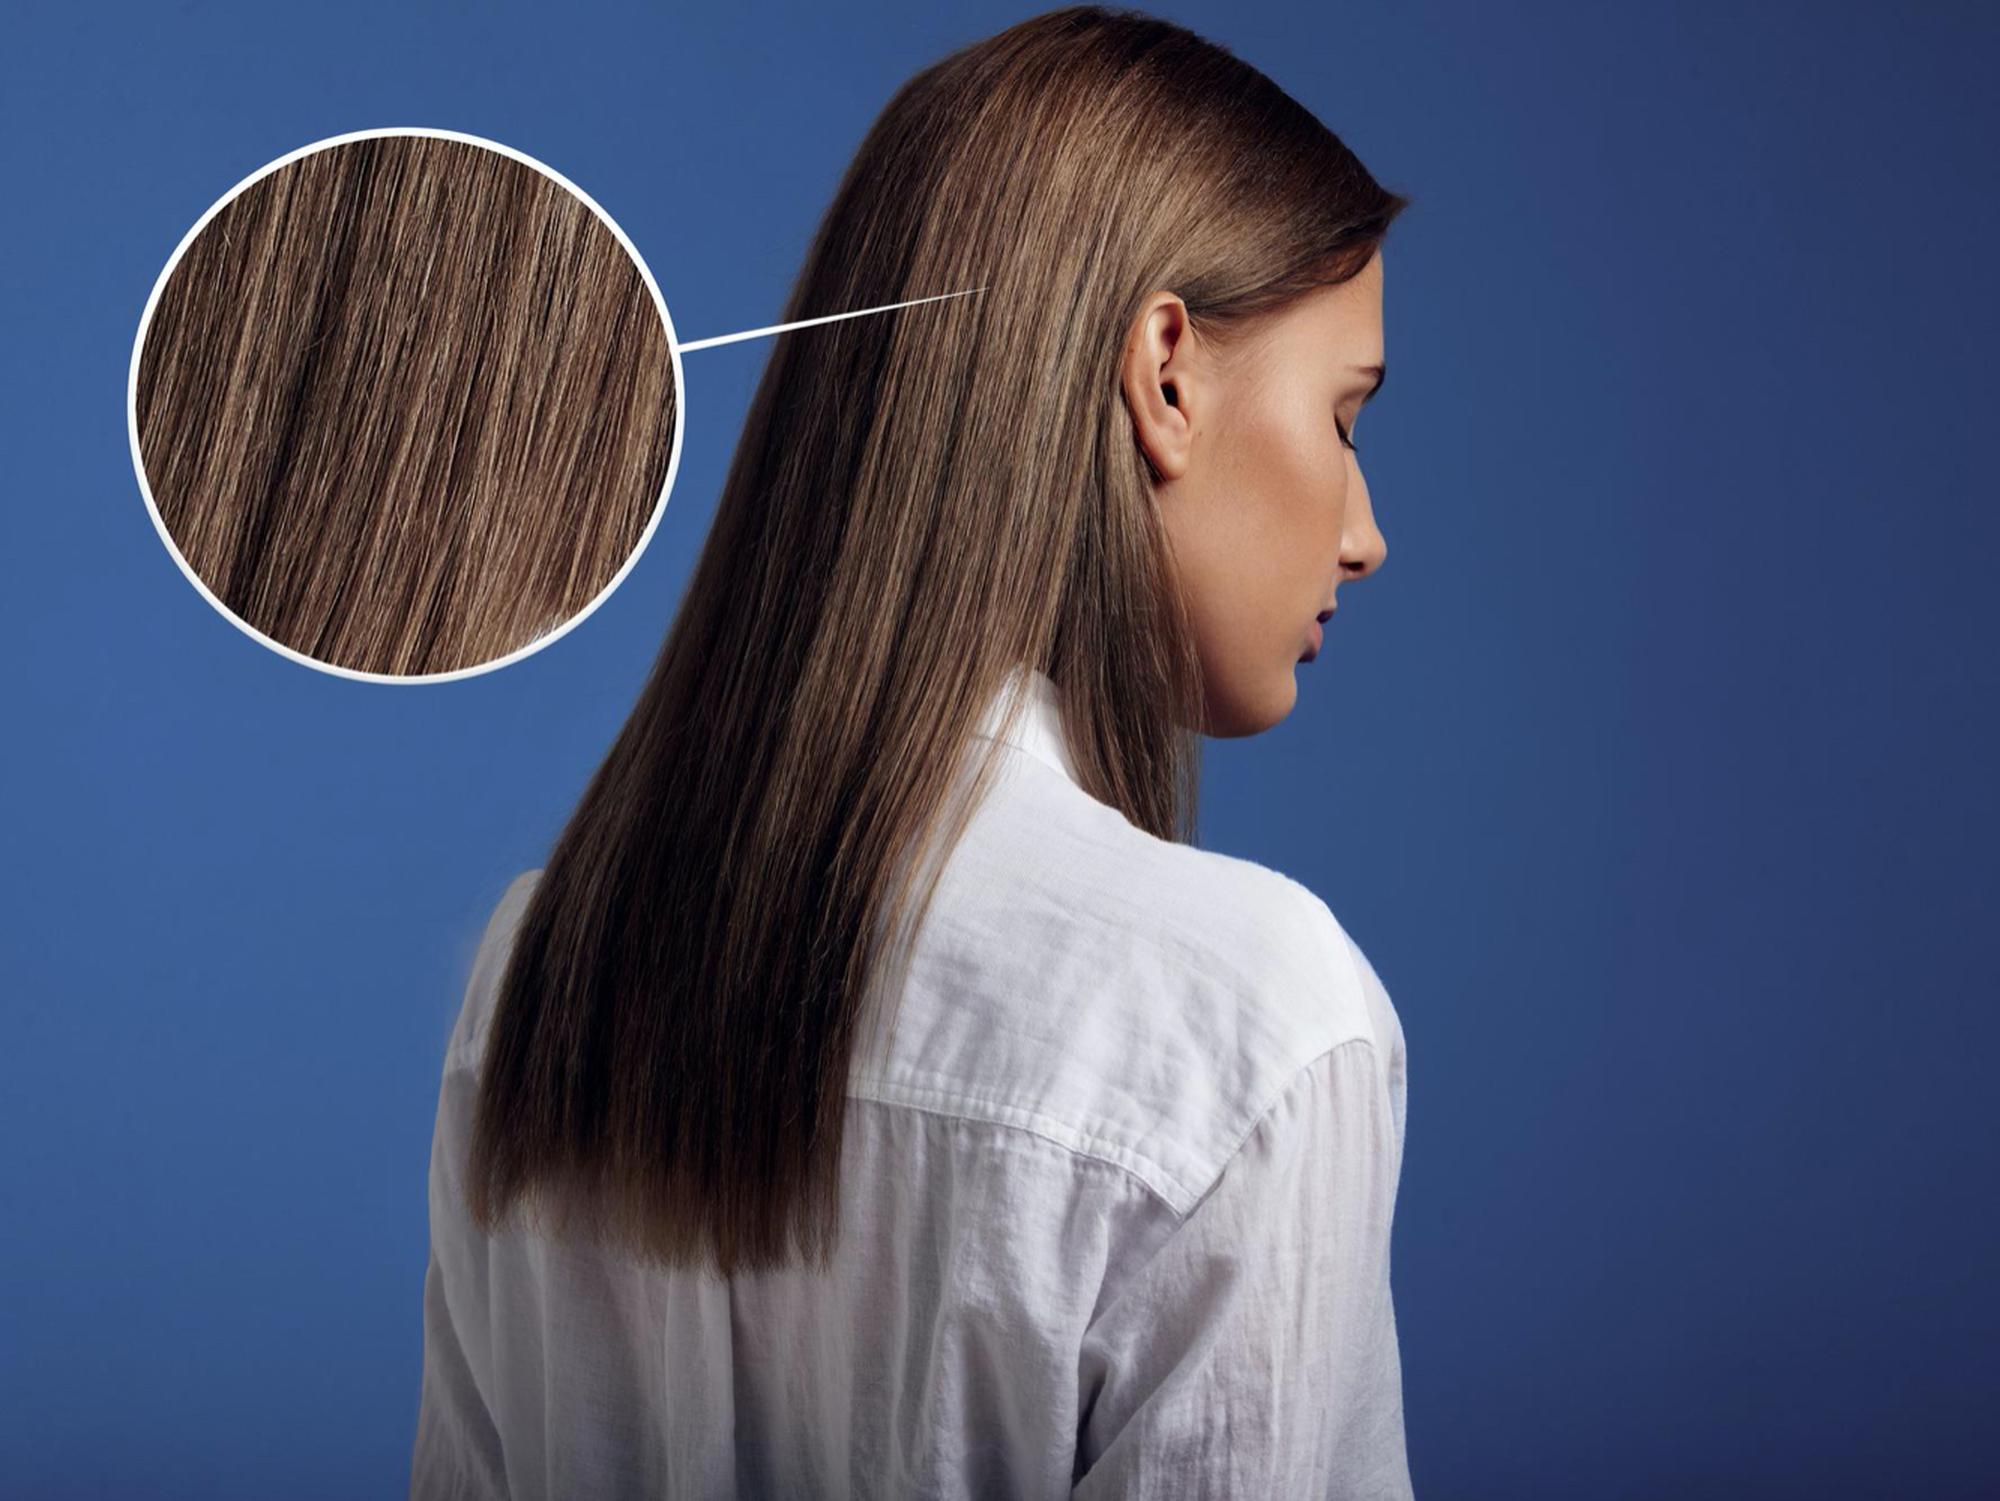 負離子直髮及電燙漂染頭髮後會導致脫髮？一文看清注意事項避免脫髮危機